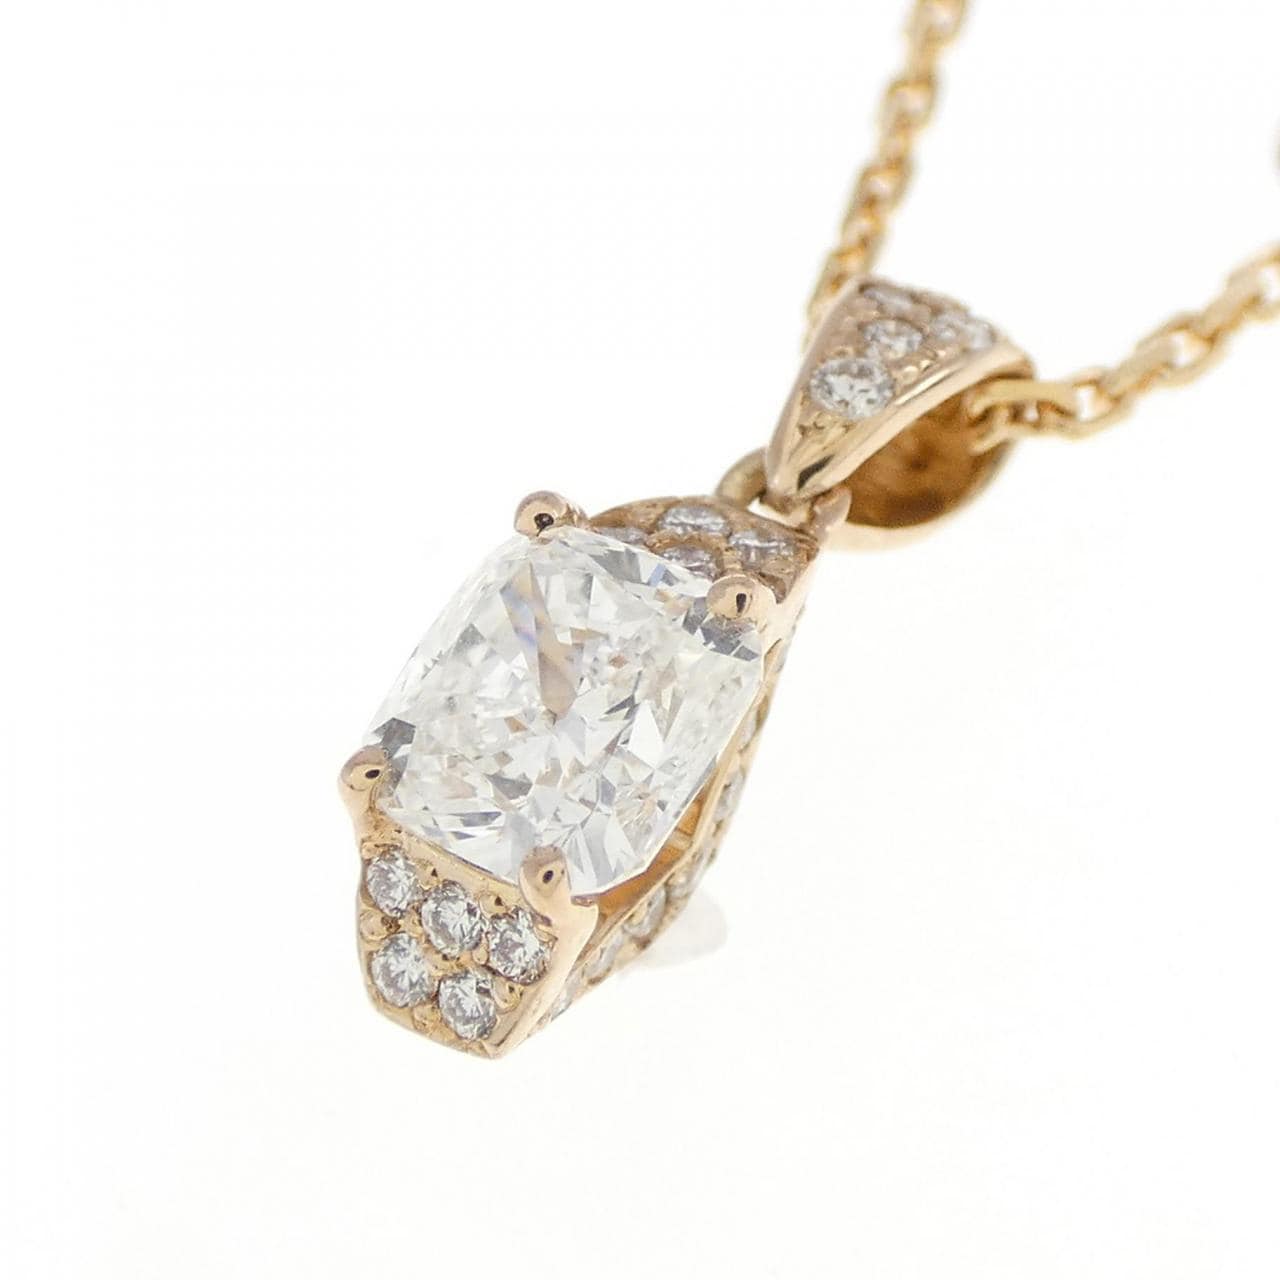 K18PG/K18WG Diamond Necklace 0.50CT G VS2 Fancy Cut